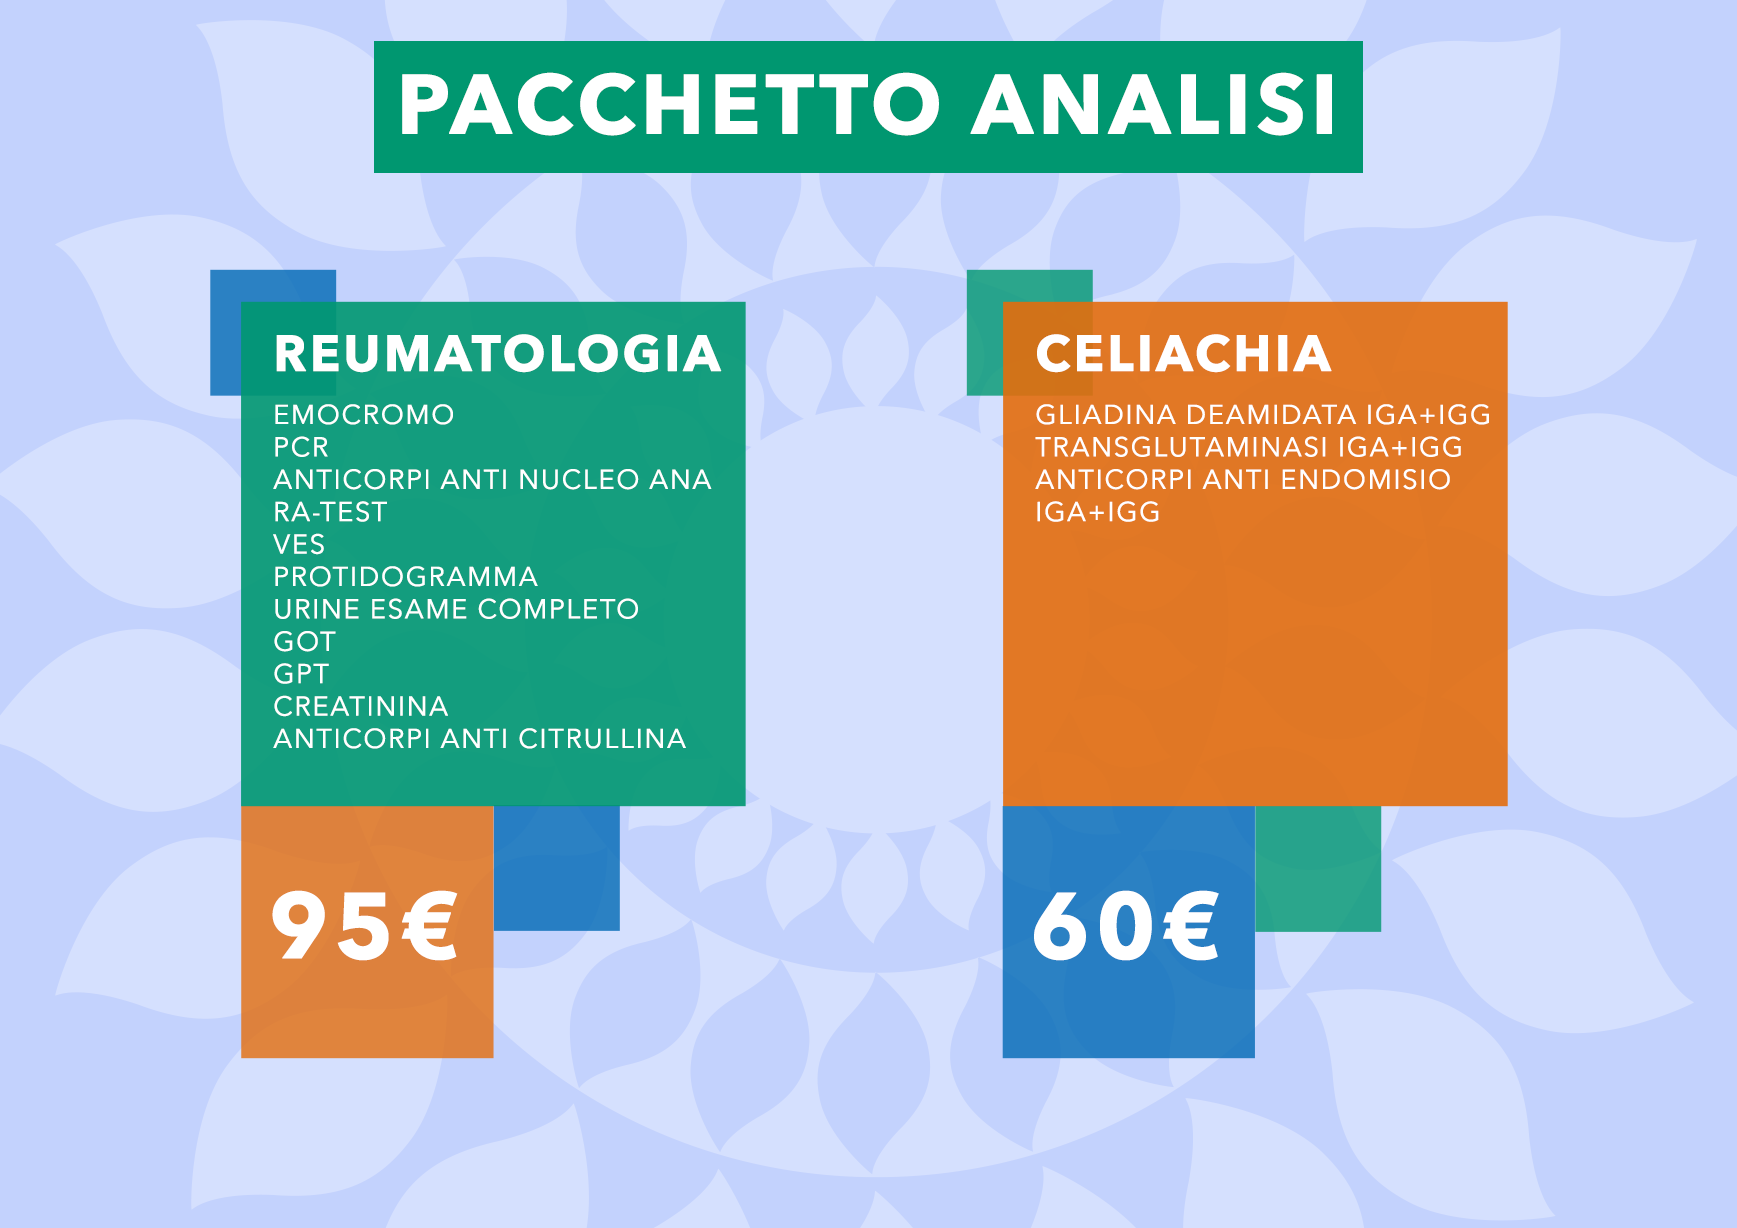 Pacchetti Analisi Reumatologia e Celiachia